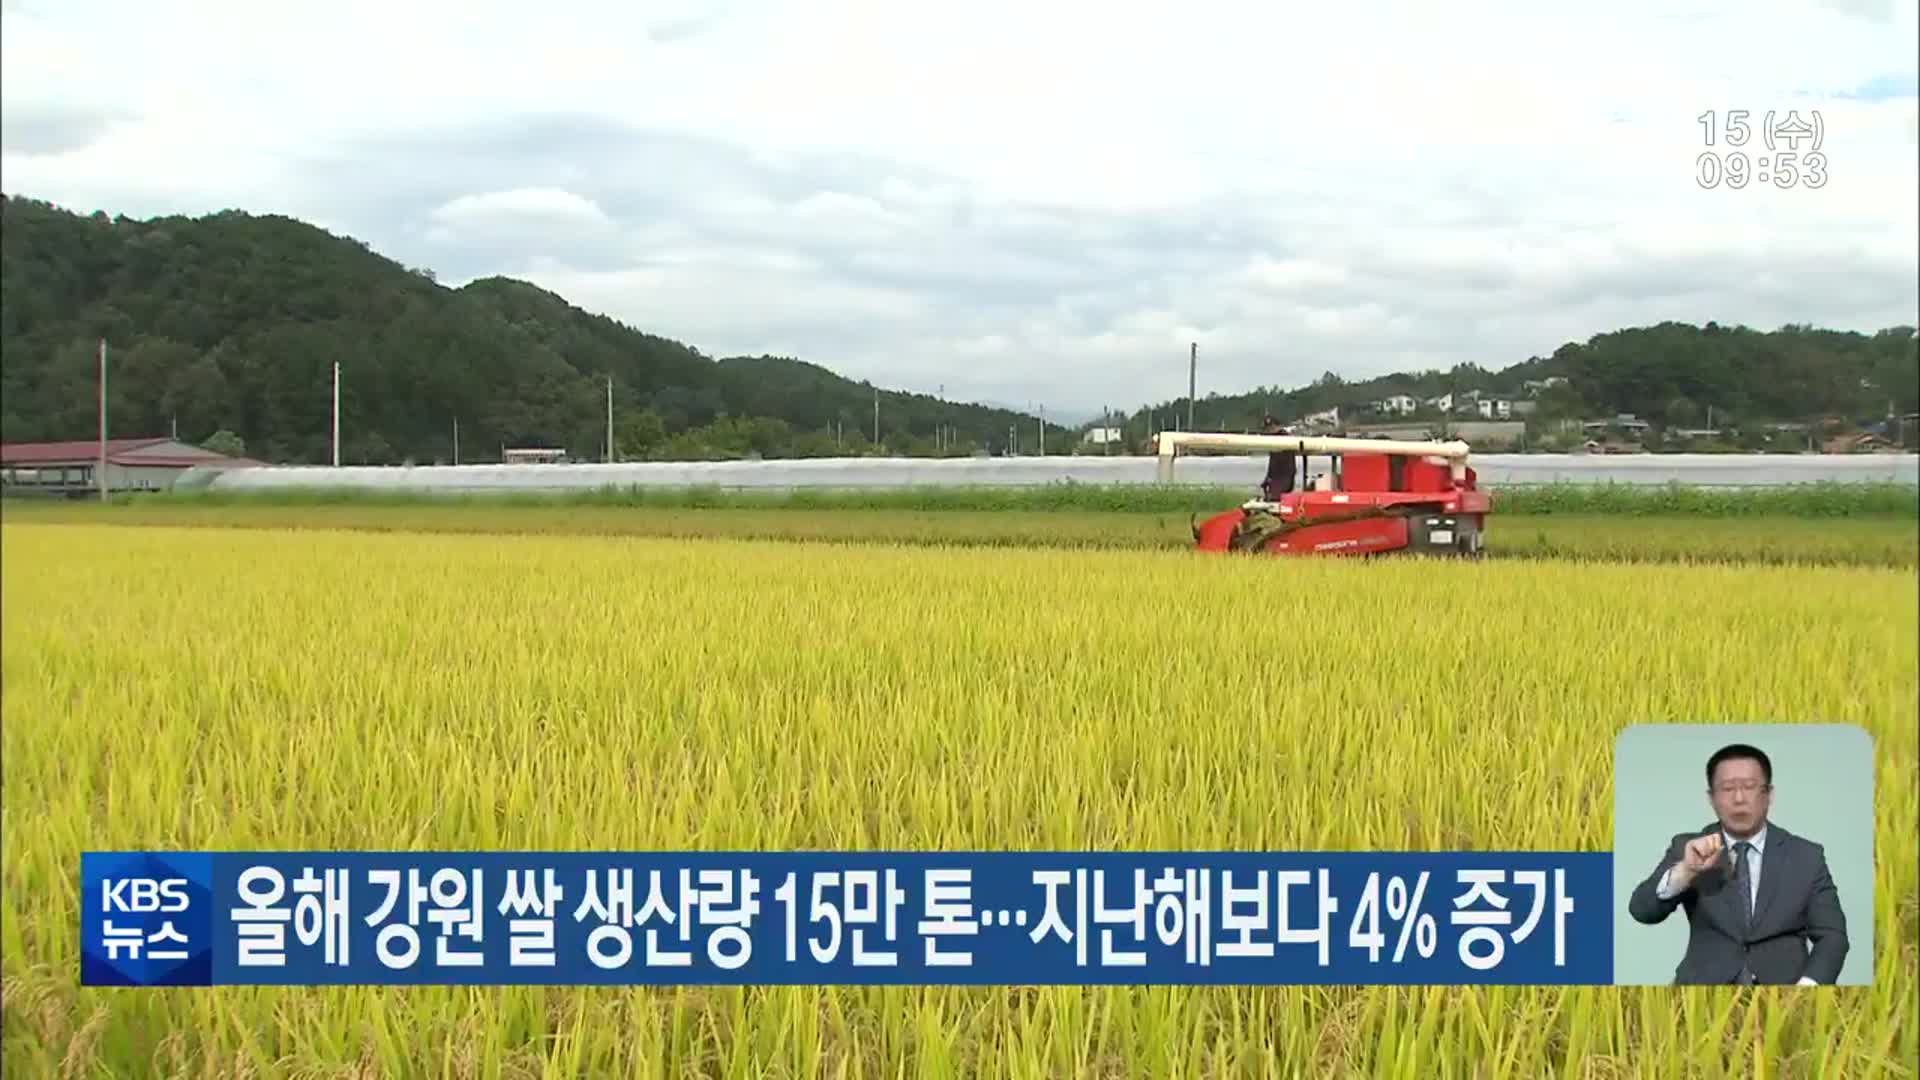 올해 강원 쌀 생산량 15만 톤…지난해보다 4% 증가